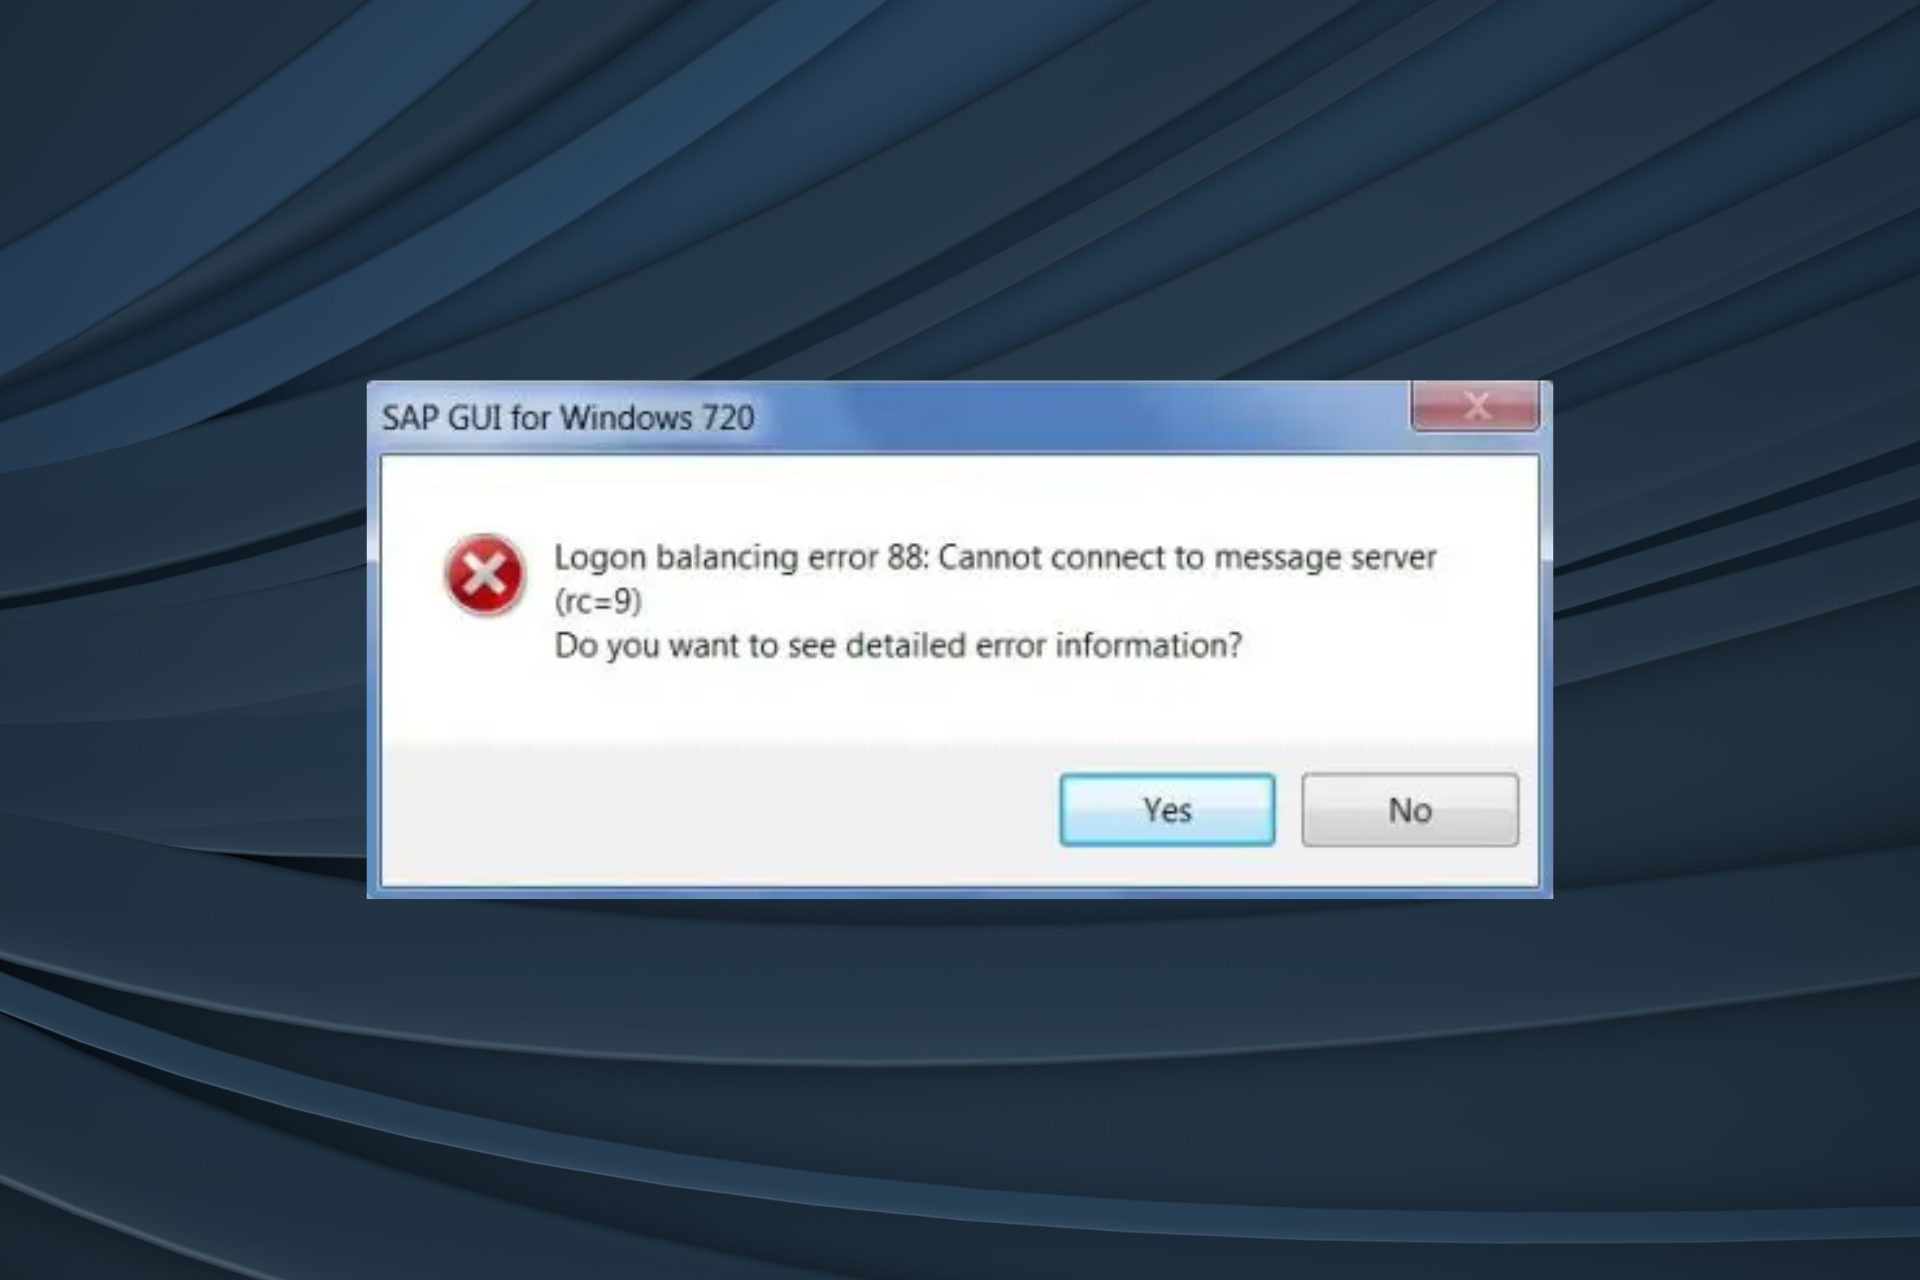 fix logon balancing error 88 in SAP GUI